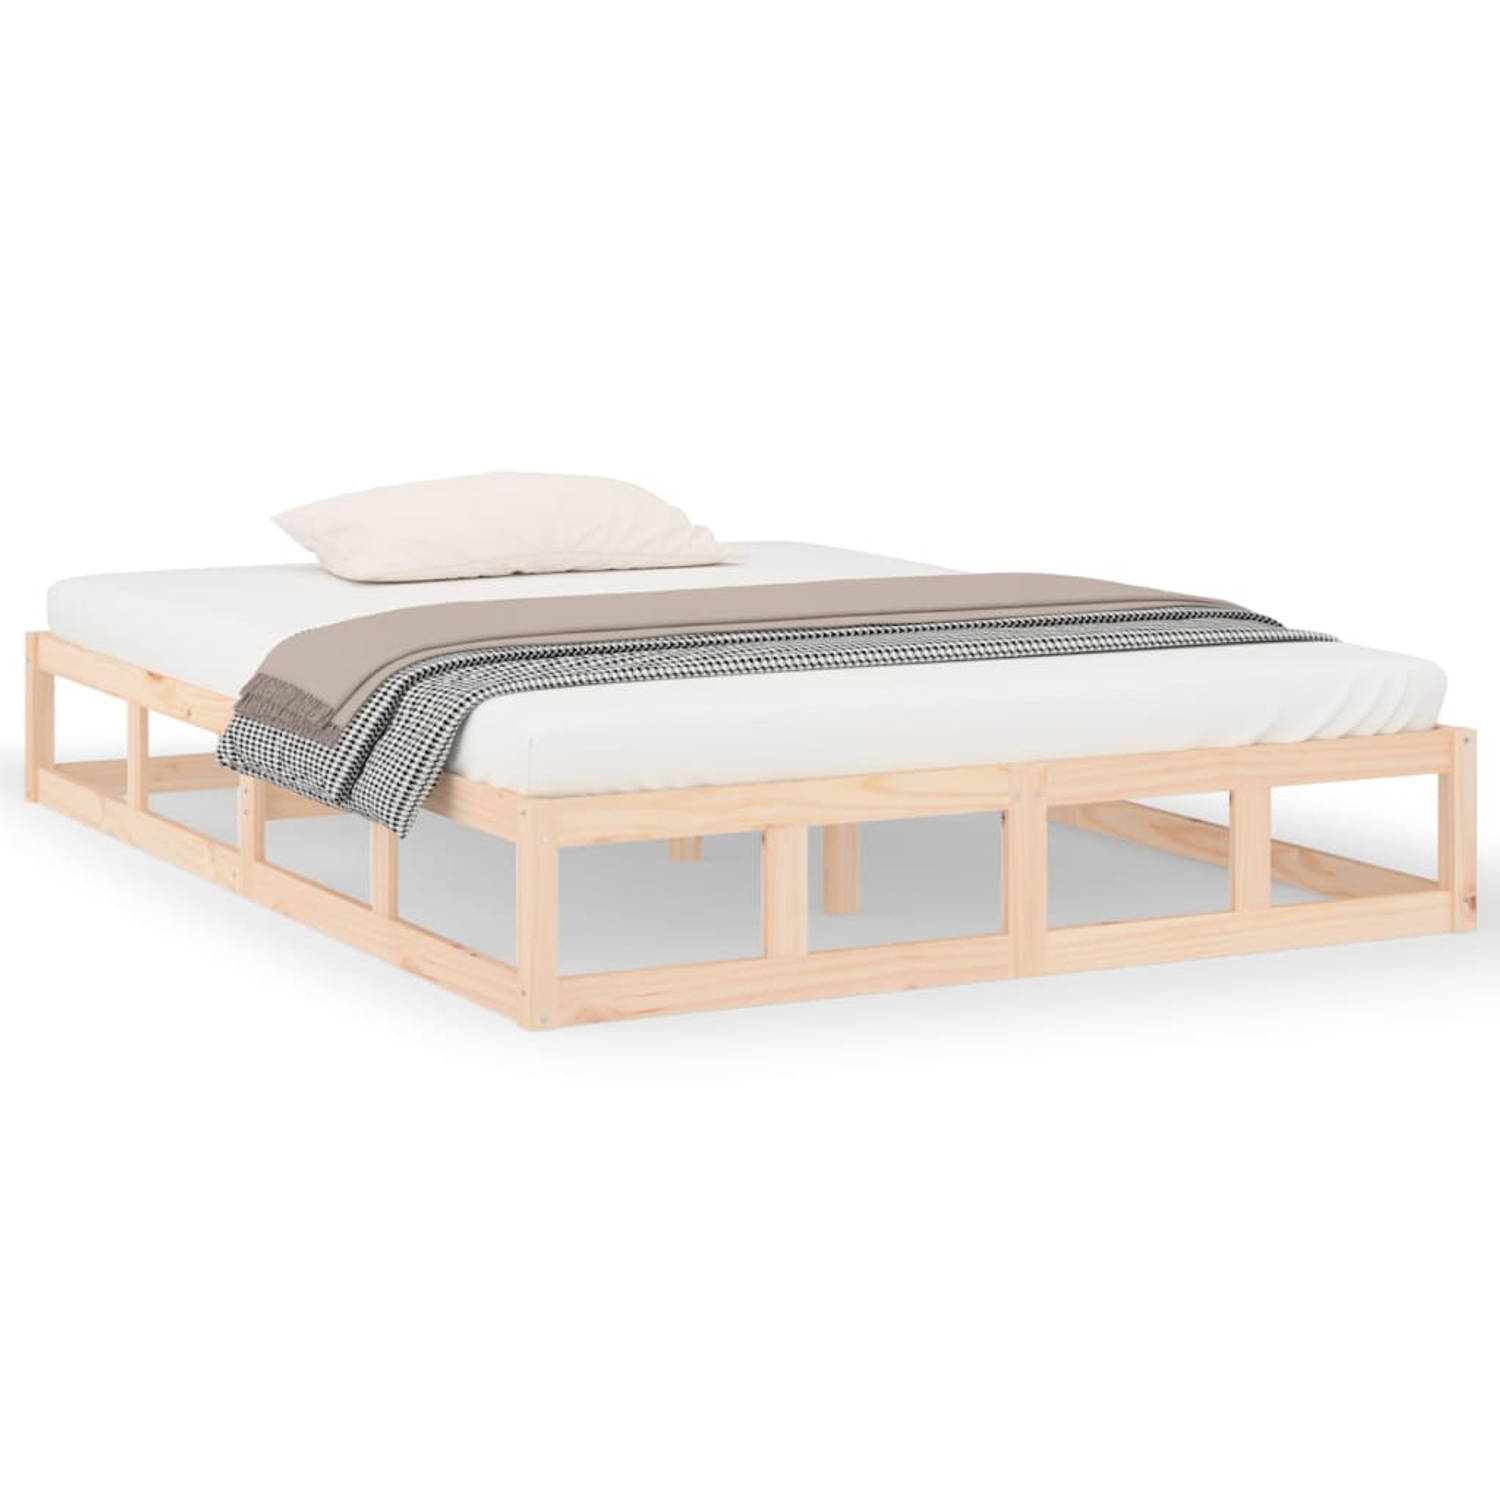 The Living Store Bedframe massief hout 120x200 cm - Bedframe - Bedframes - Bed - Bedbodem - Ledikant - Bed Frame - Massief Houten Bedframe - Slaapmeubel - Tweepersoonsbed - Bedden